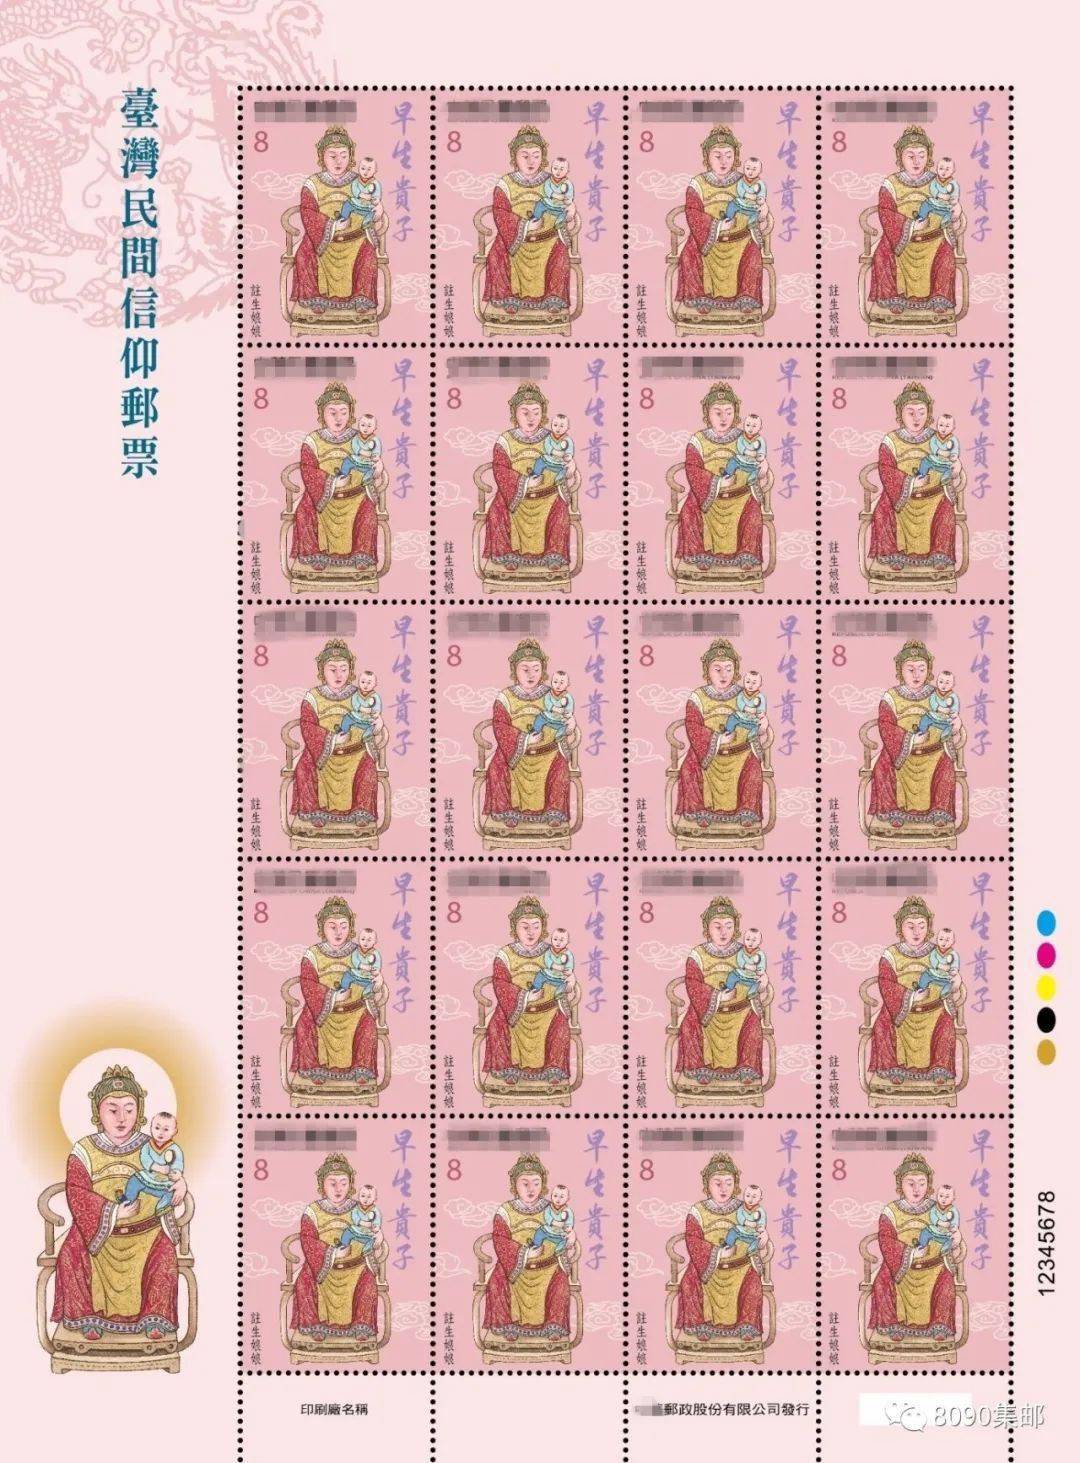 台湾民间信仰邮票图稿公布,9月21日发行